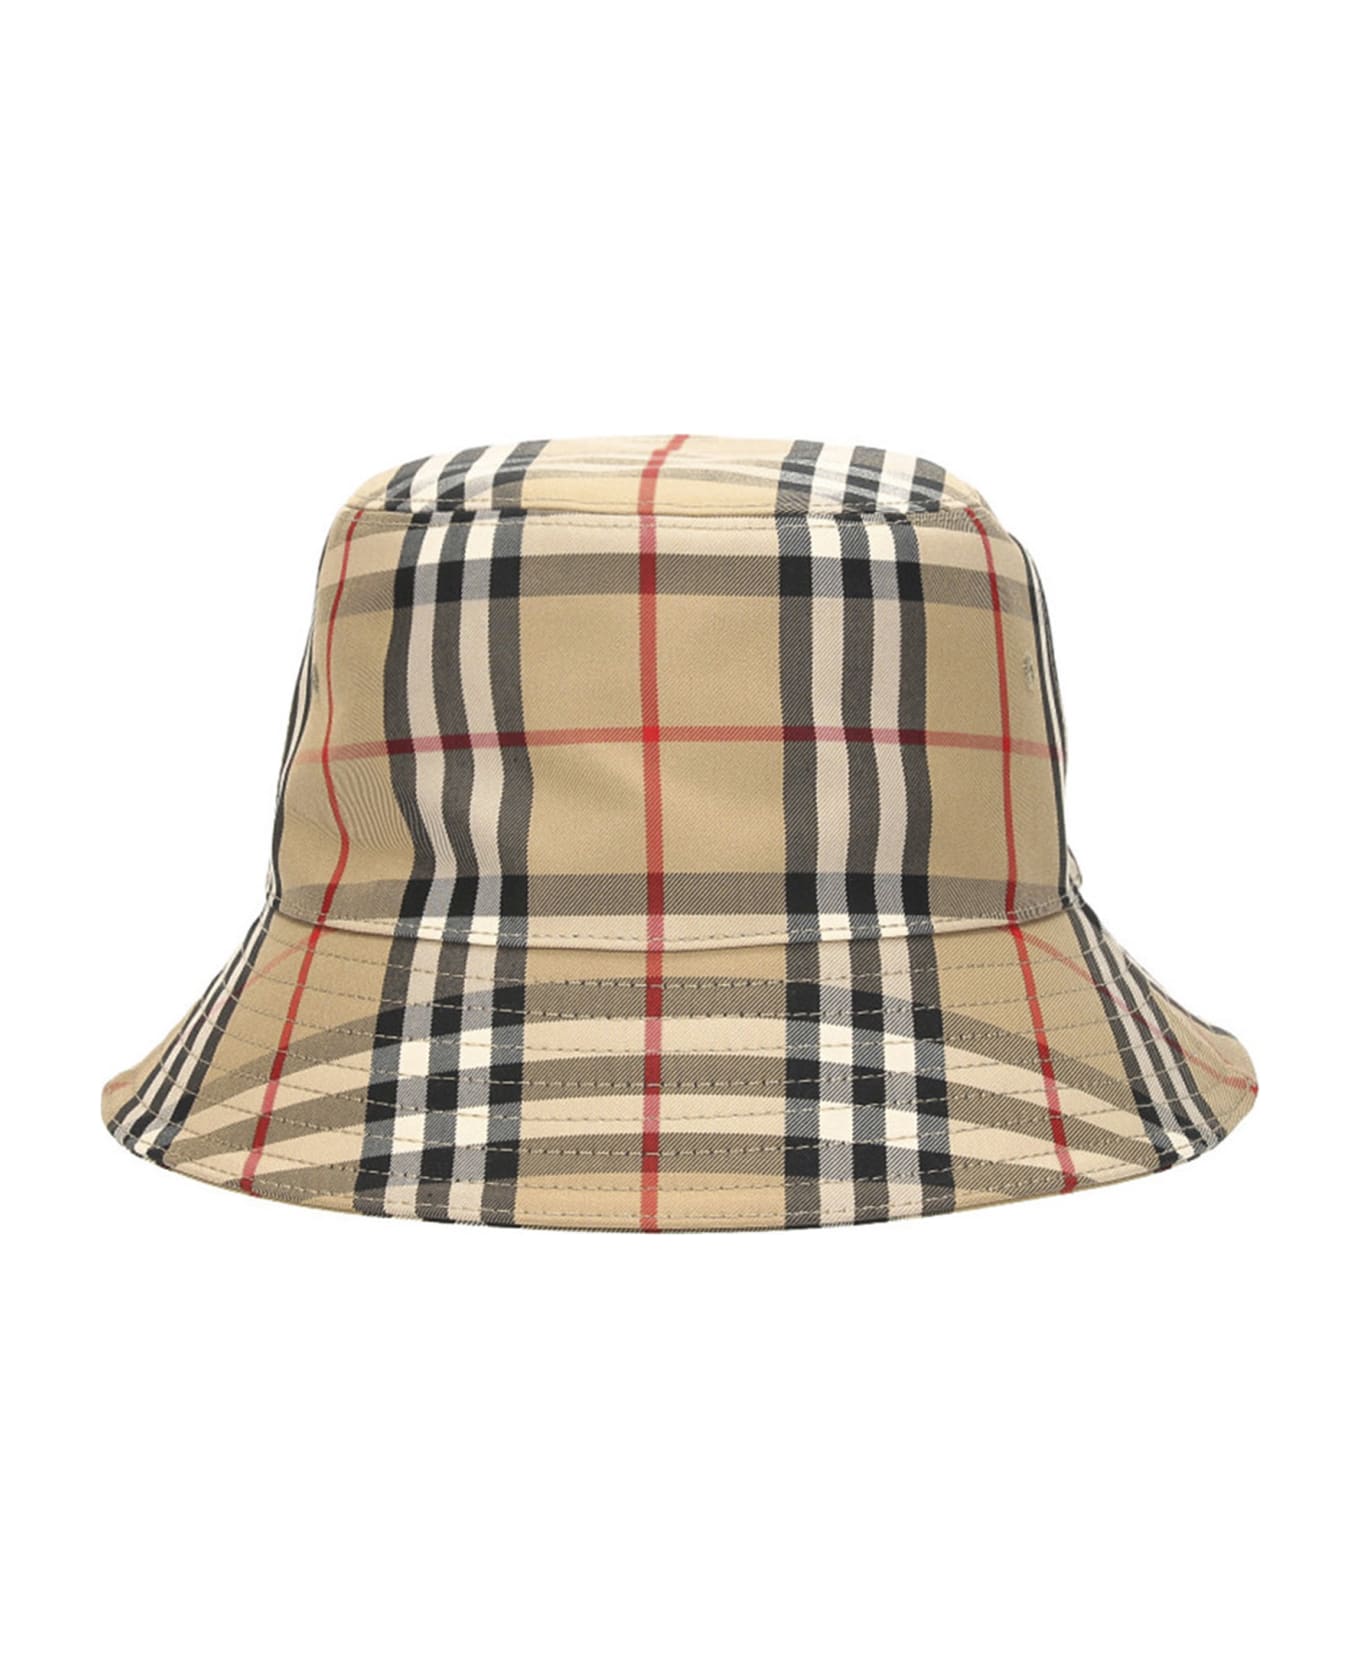 Burberry Check Bucket Hat - Beige